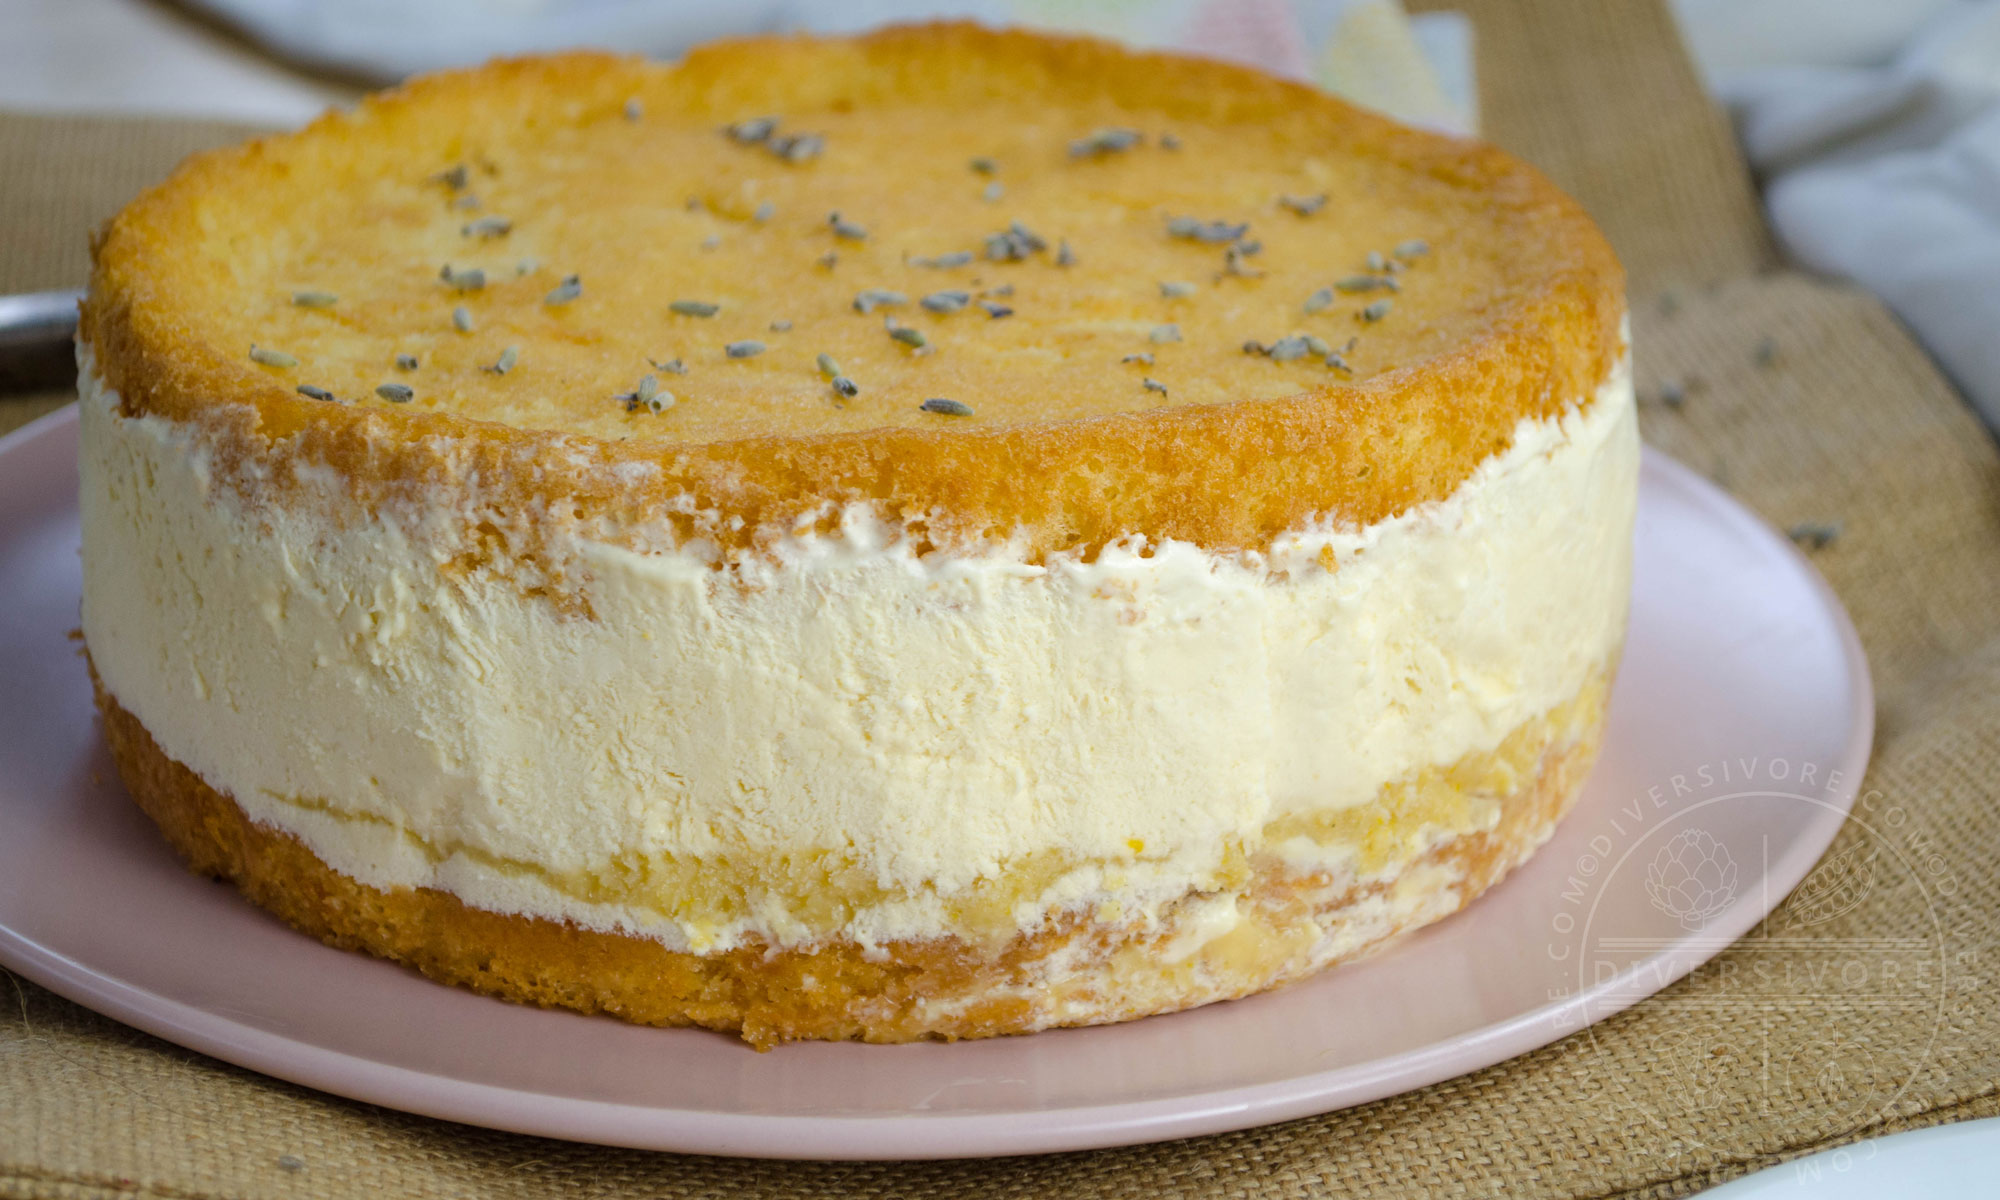 Featured image for “Lavender, Lemon, & Honey Semifreddo Cake”